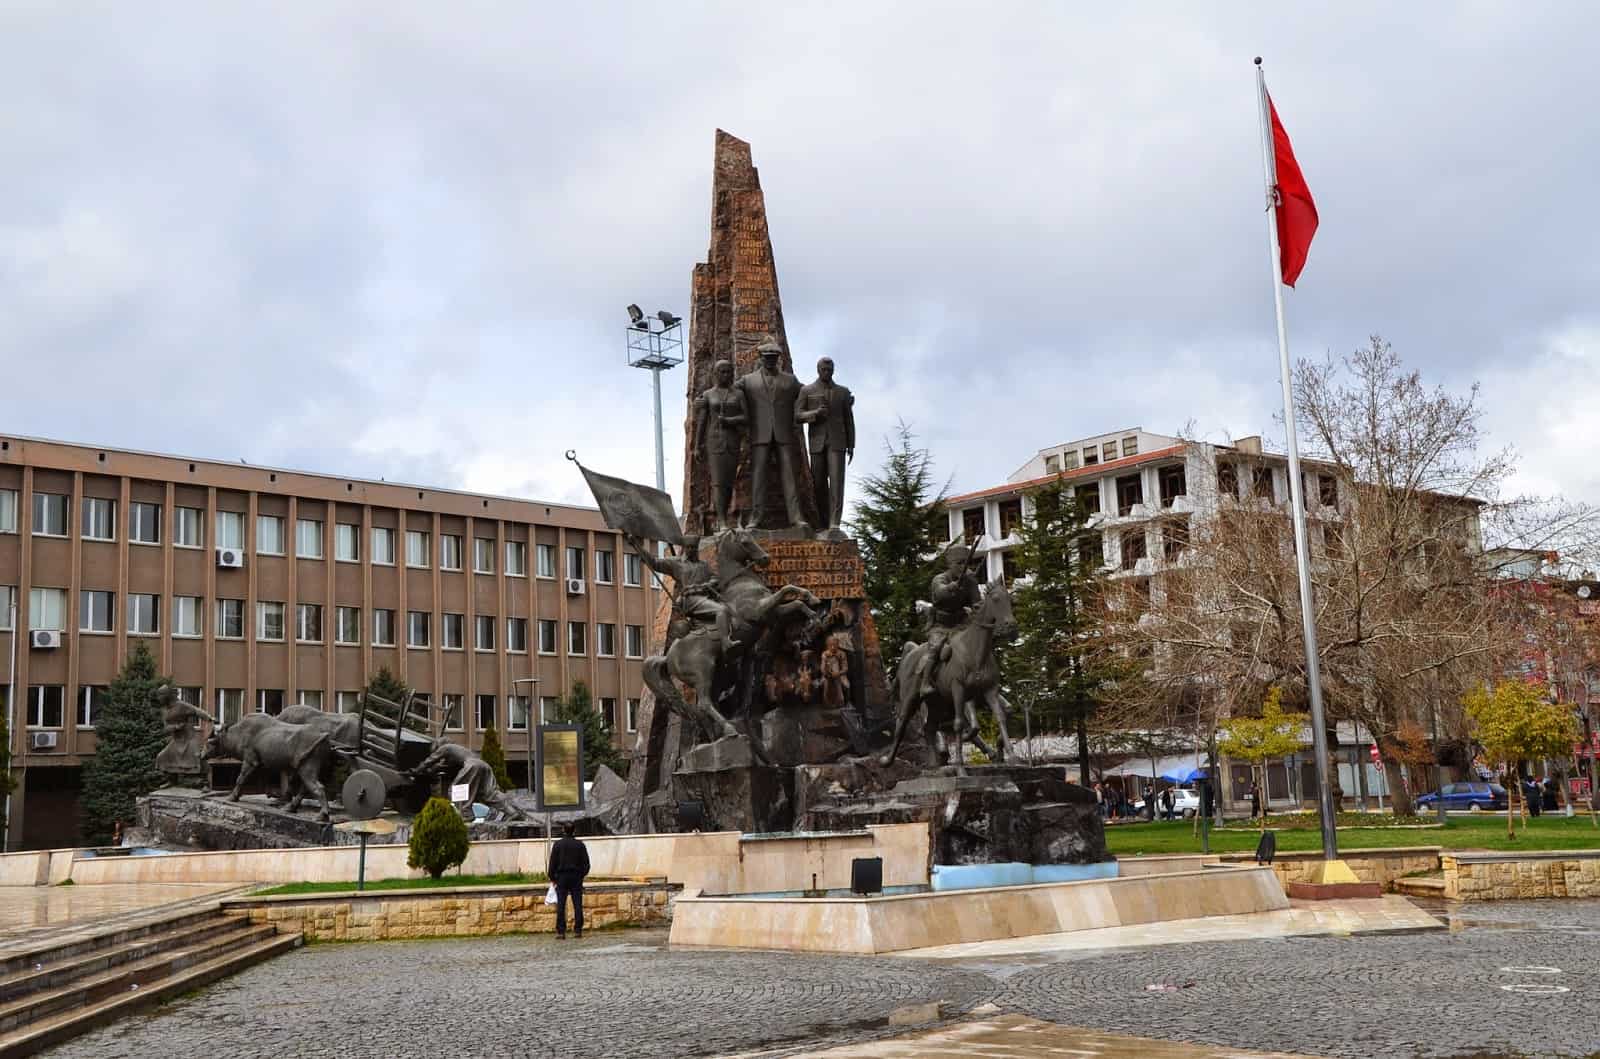 Atatürk Monument in Uşak, Turkey